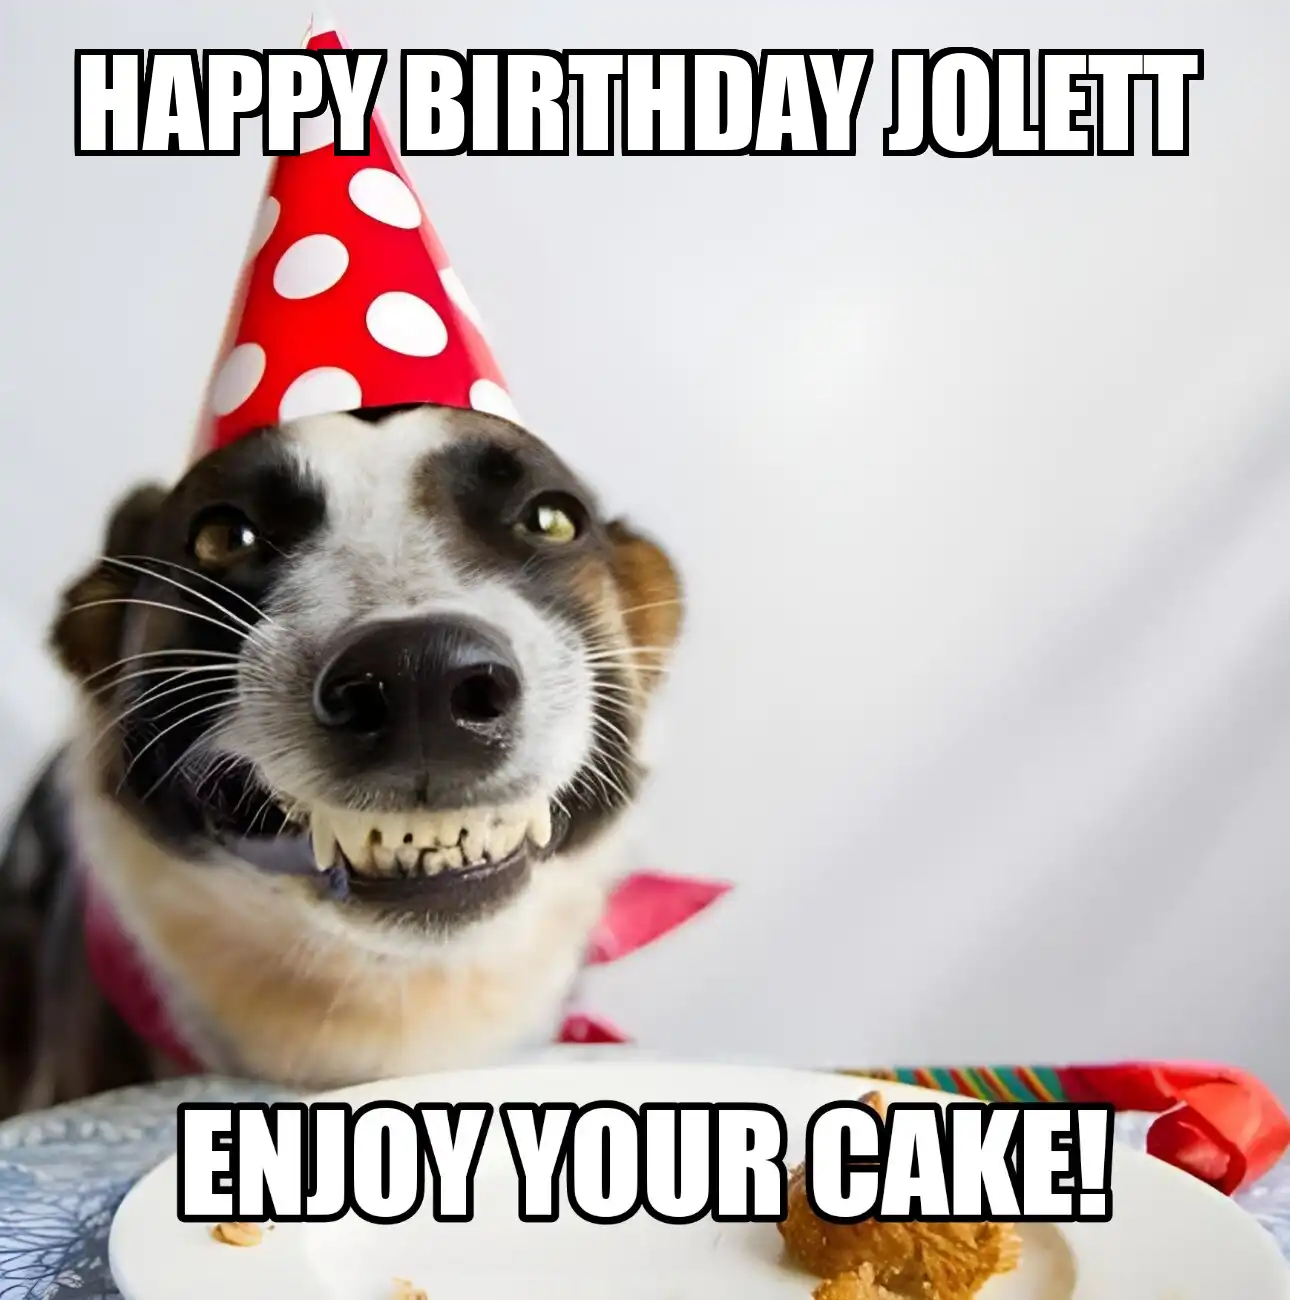 Happy Birthday Jolett Enjoy Your Cake Dog Meme